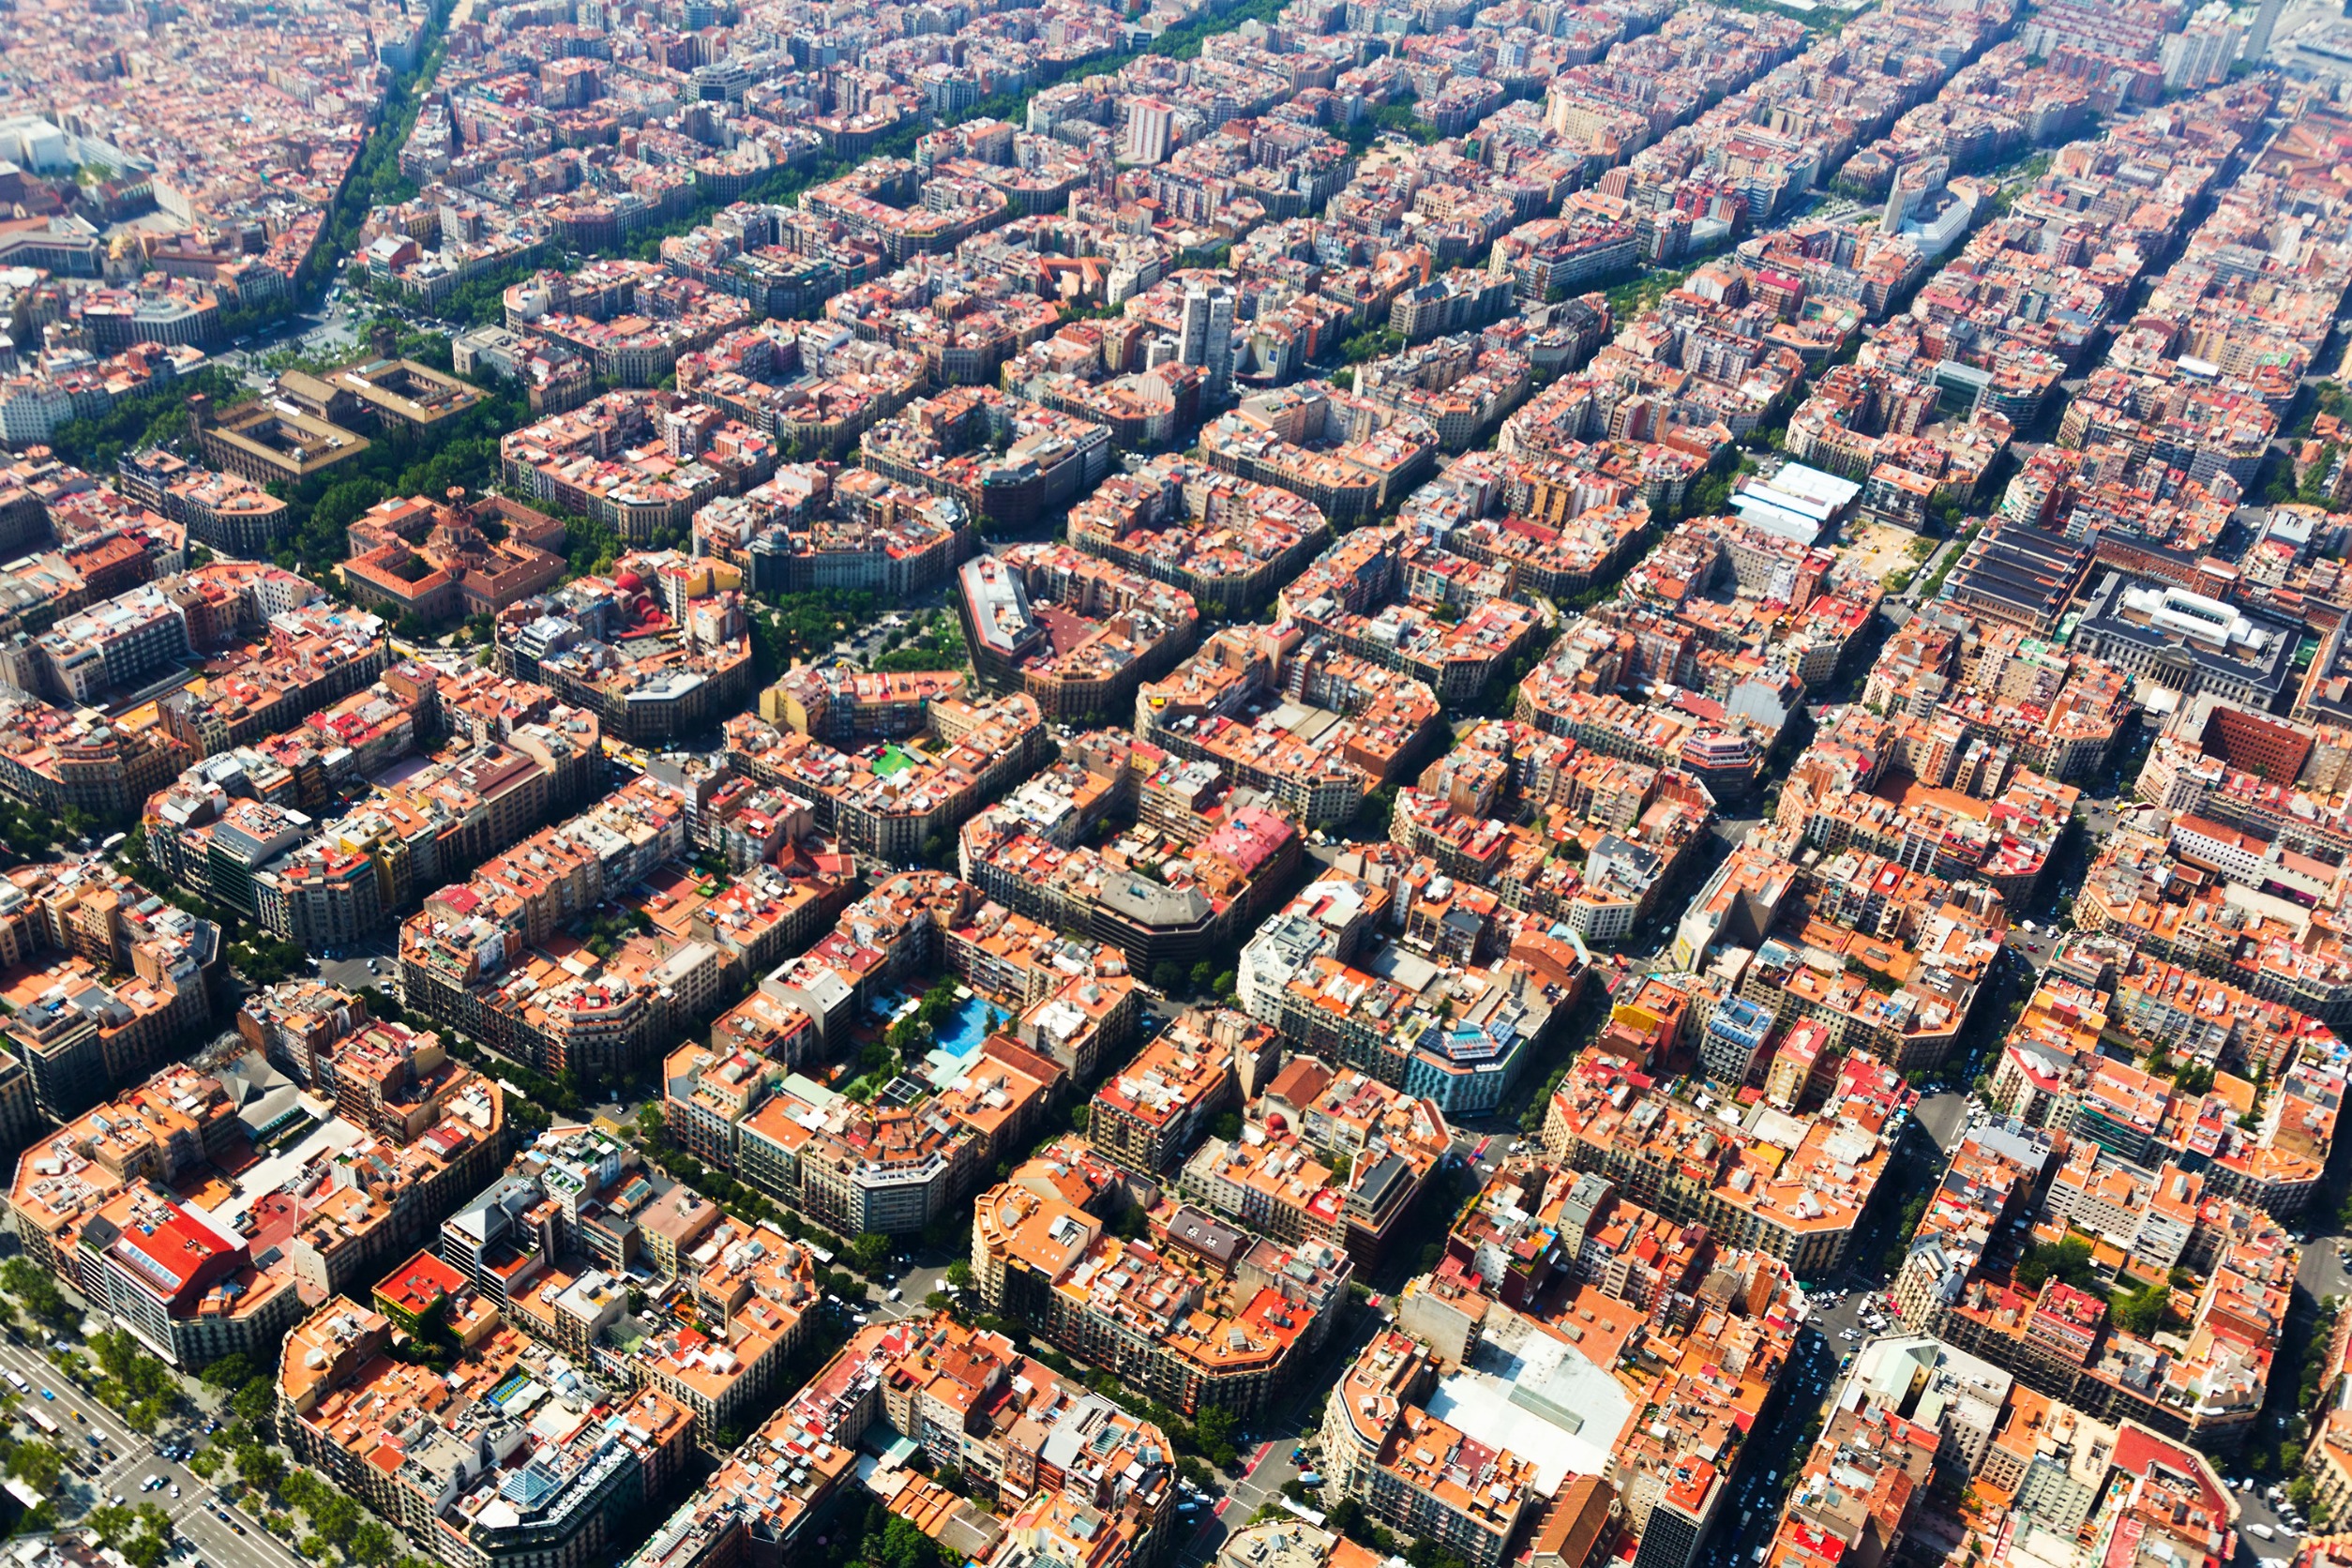 Aportacions del modernisme català al desenvolupament arquitectònic de Barcelona